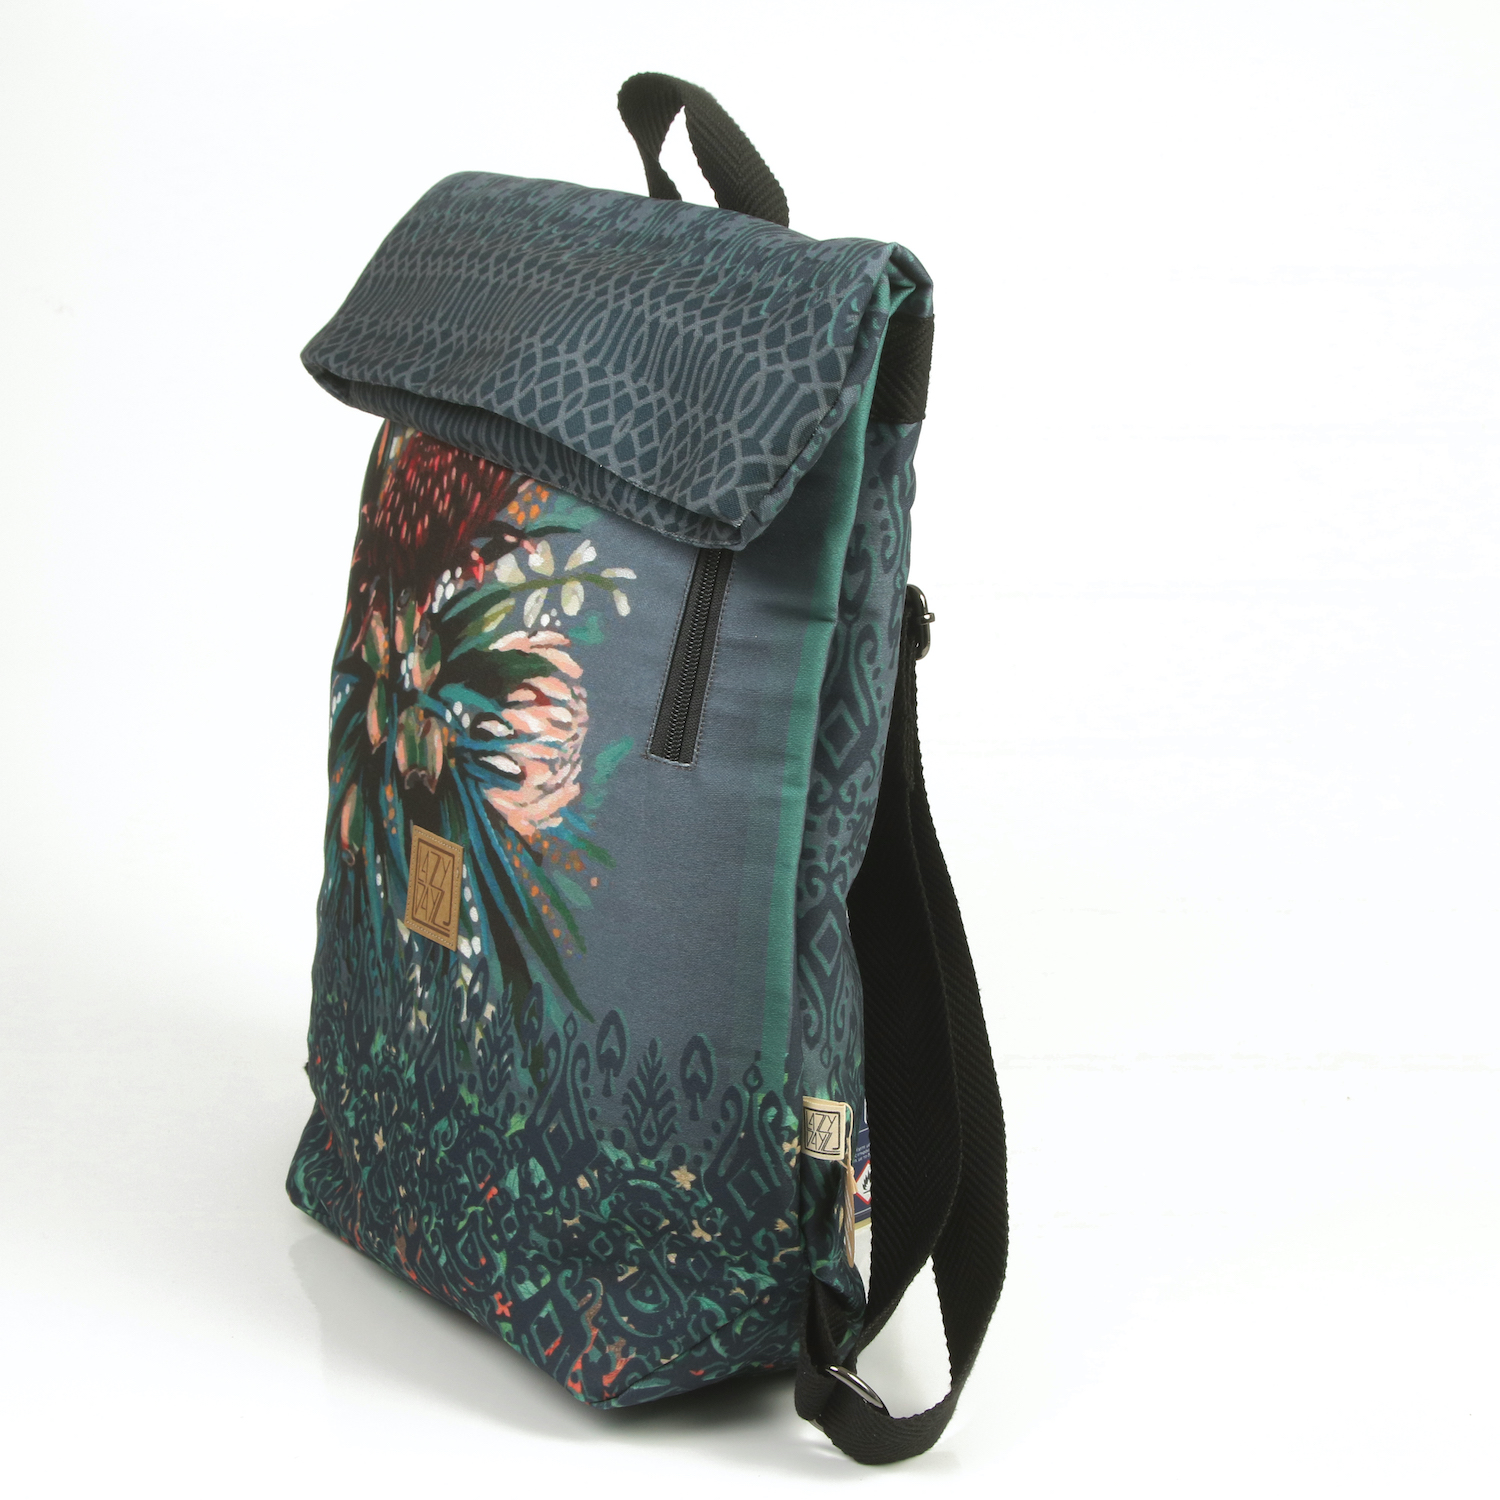 LazyDayz-Designs-Backpack-γυναικείος-σάκος-πλάτης-χειροποίητος bb0803b